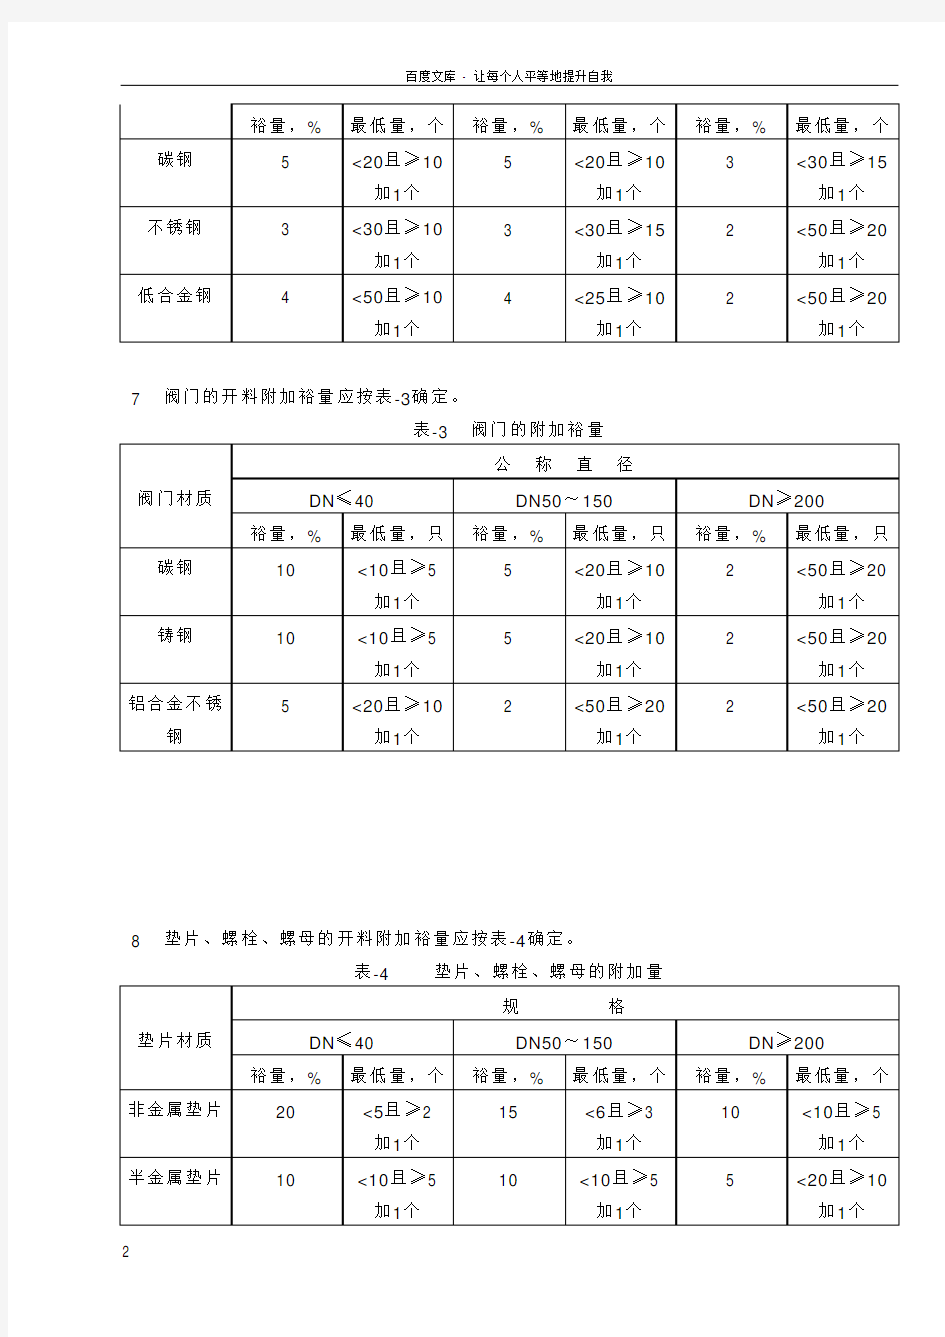 中国石化北京设计院标准管道开料附加裕量的规定